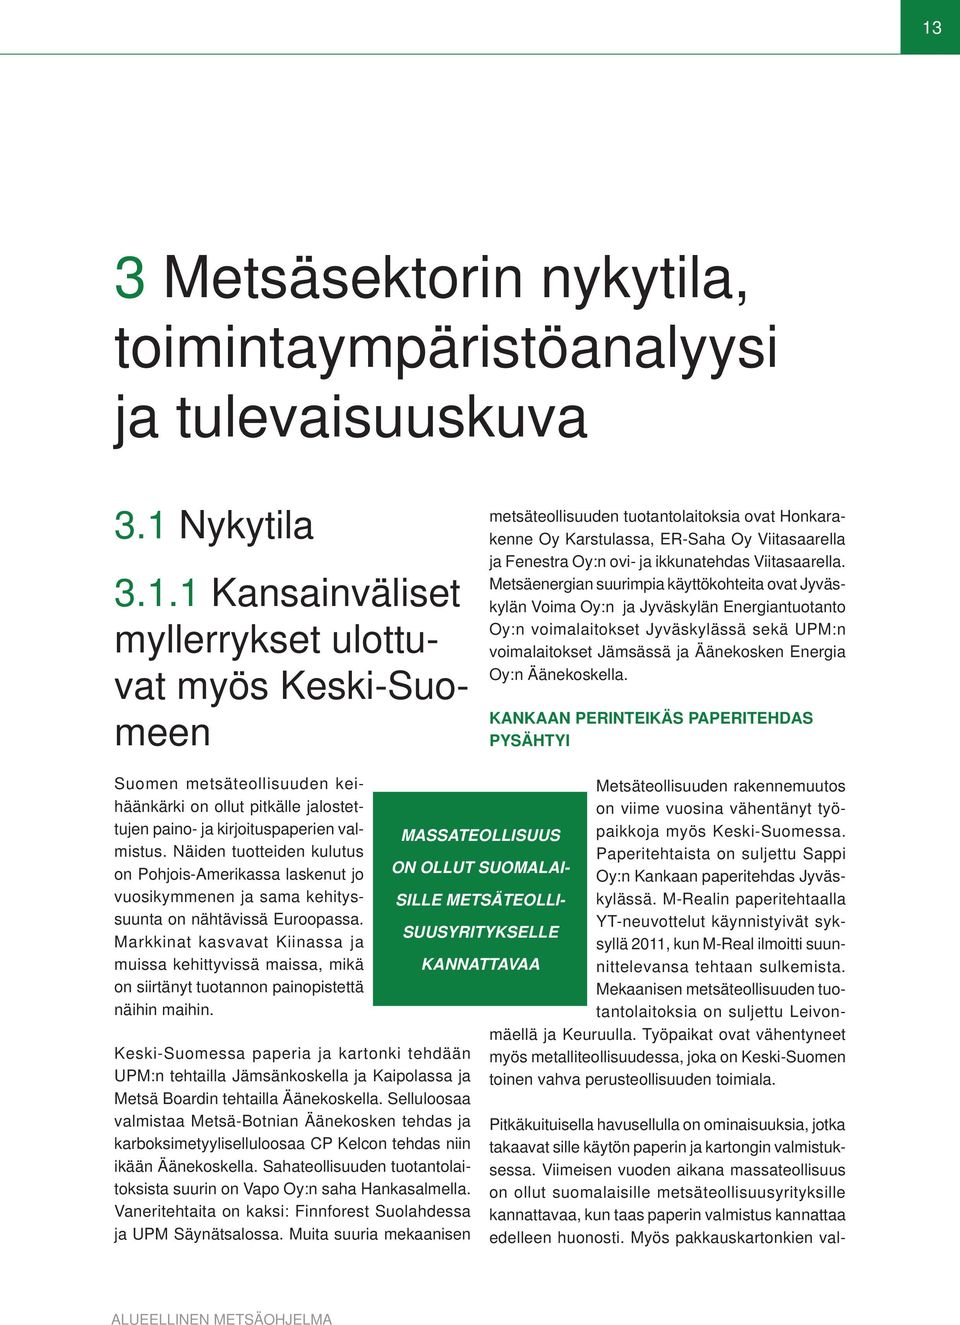 Metsäenergian suurimpia käyttökohteita ovat Jyväskylän Voima Oy:n ja Jyväskylän Energiantuotanto Oy:n voimalaitokset Jyväskylässä sekä UPM:n voimalaitokset Jämsässä ja Äänekosken Energia Oy:n